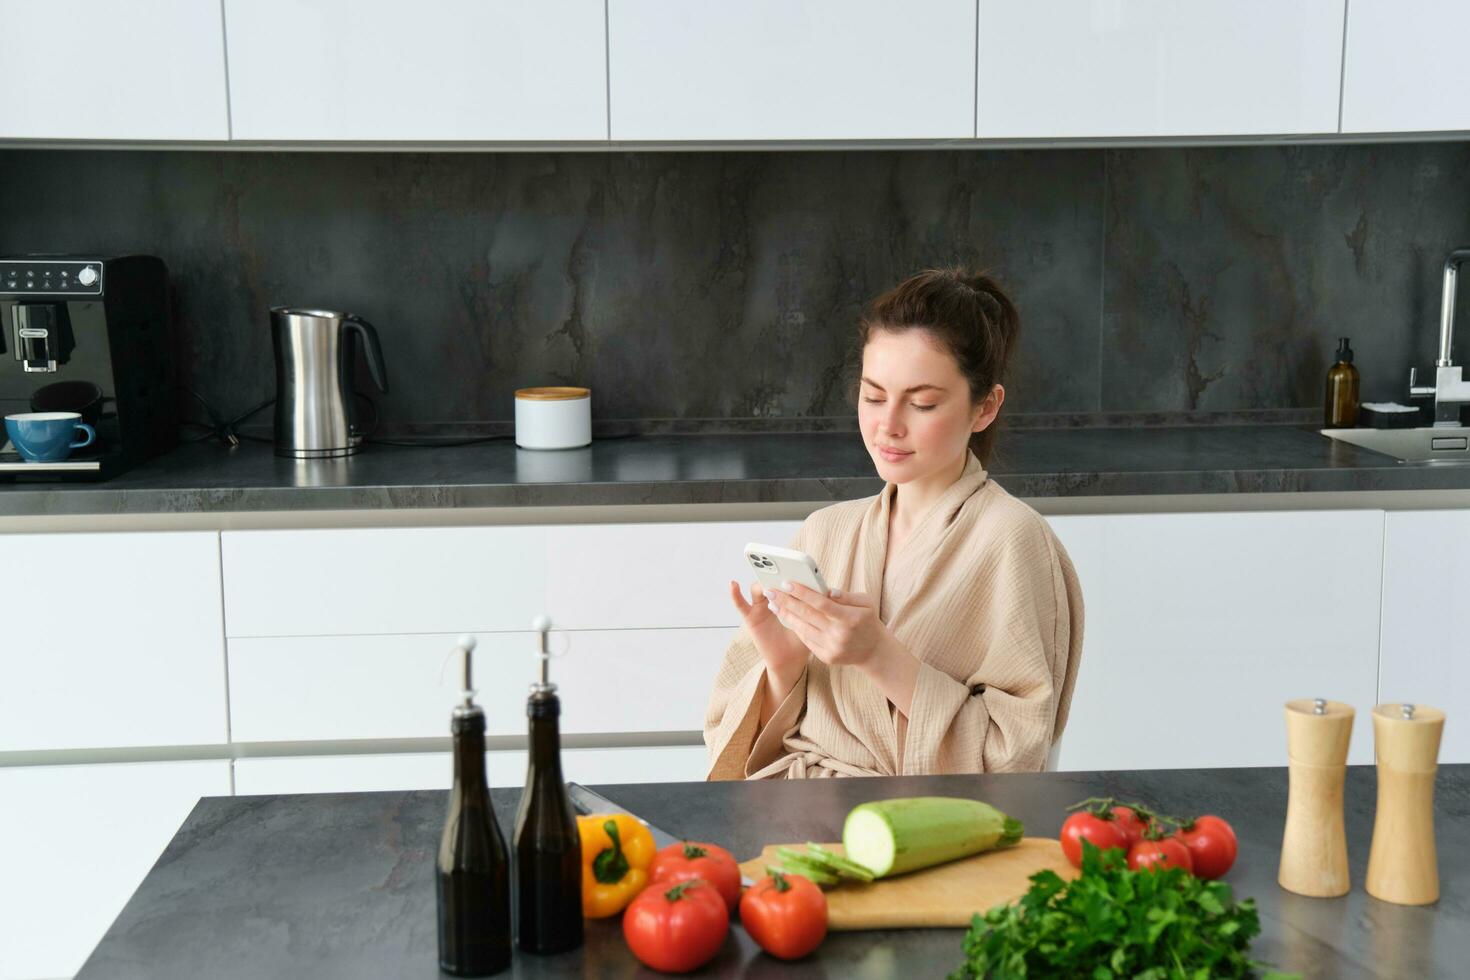 retrato de mujer en bata de baño sentado en cocina con teléfono inteligente, Cocinando cena, acecho receta en social medios de comunicación, vídeo tutorial cómo a preparar comida foto